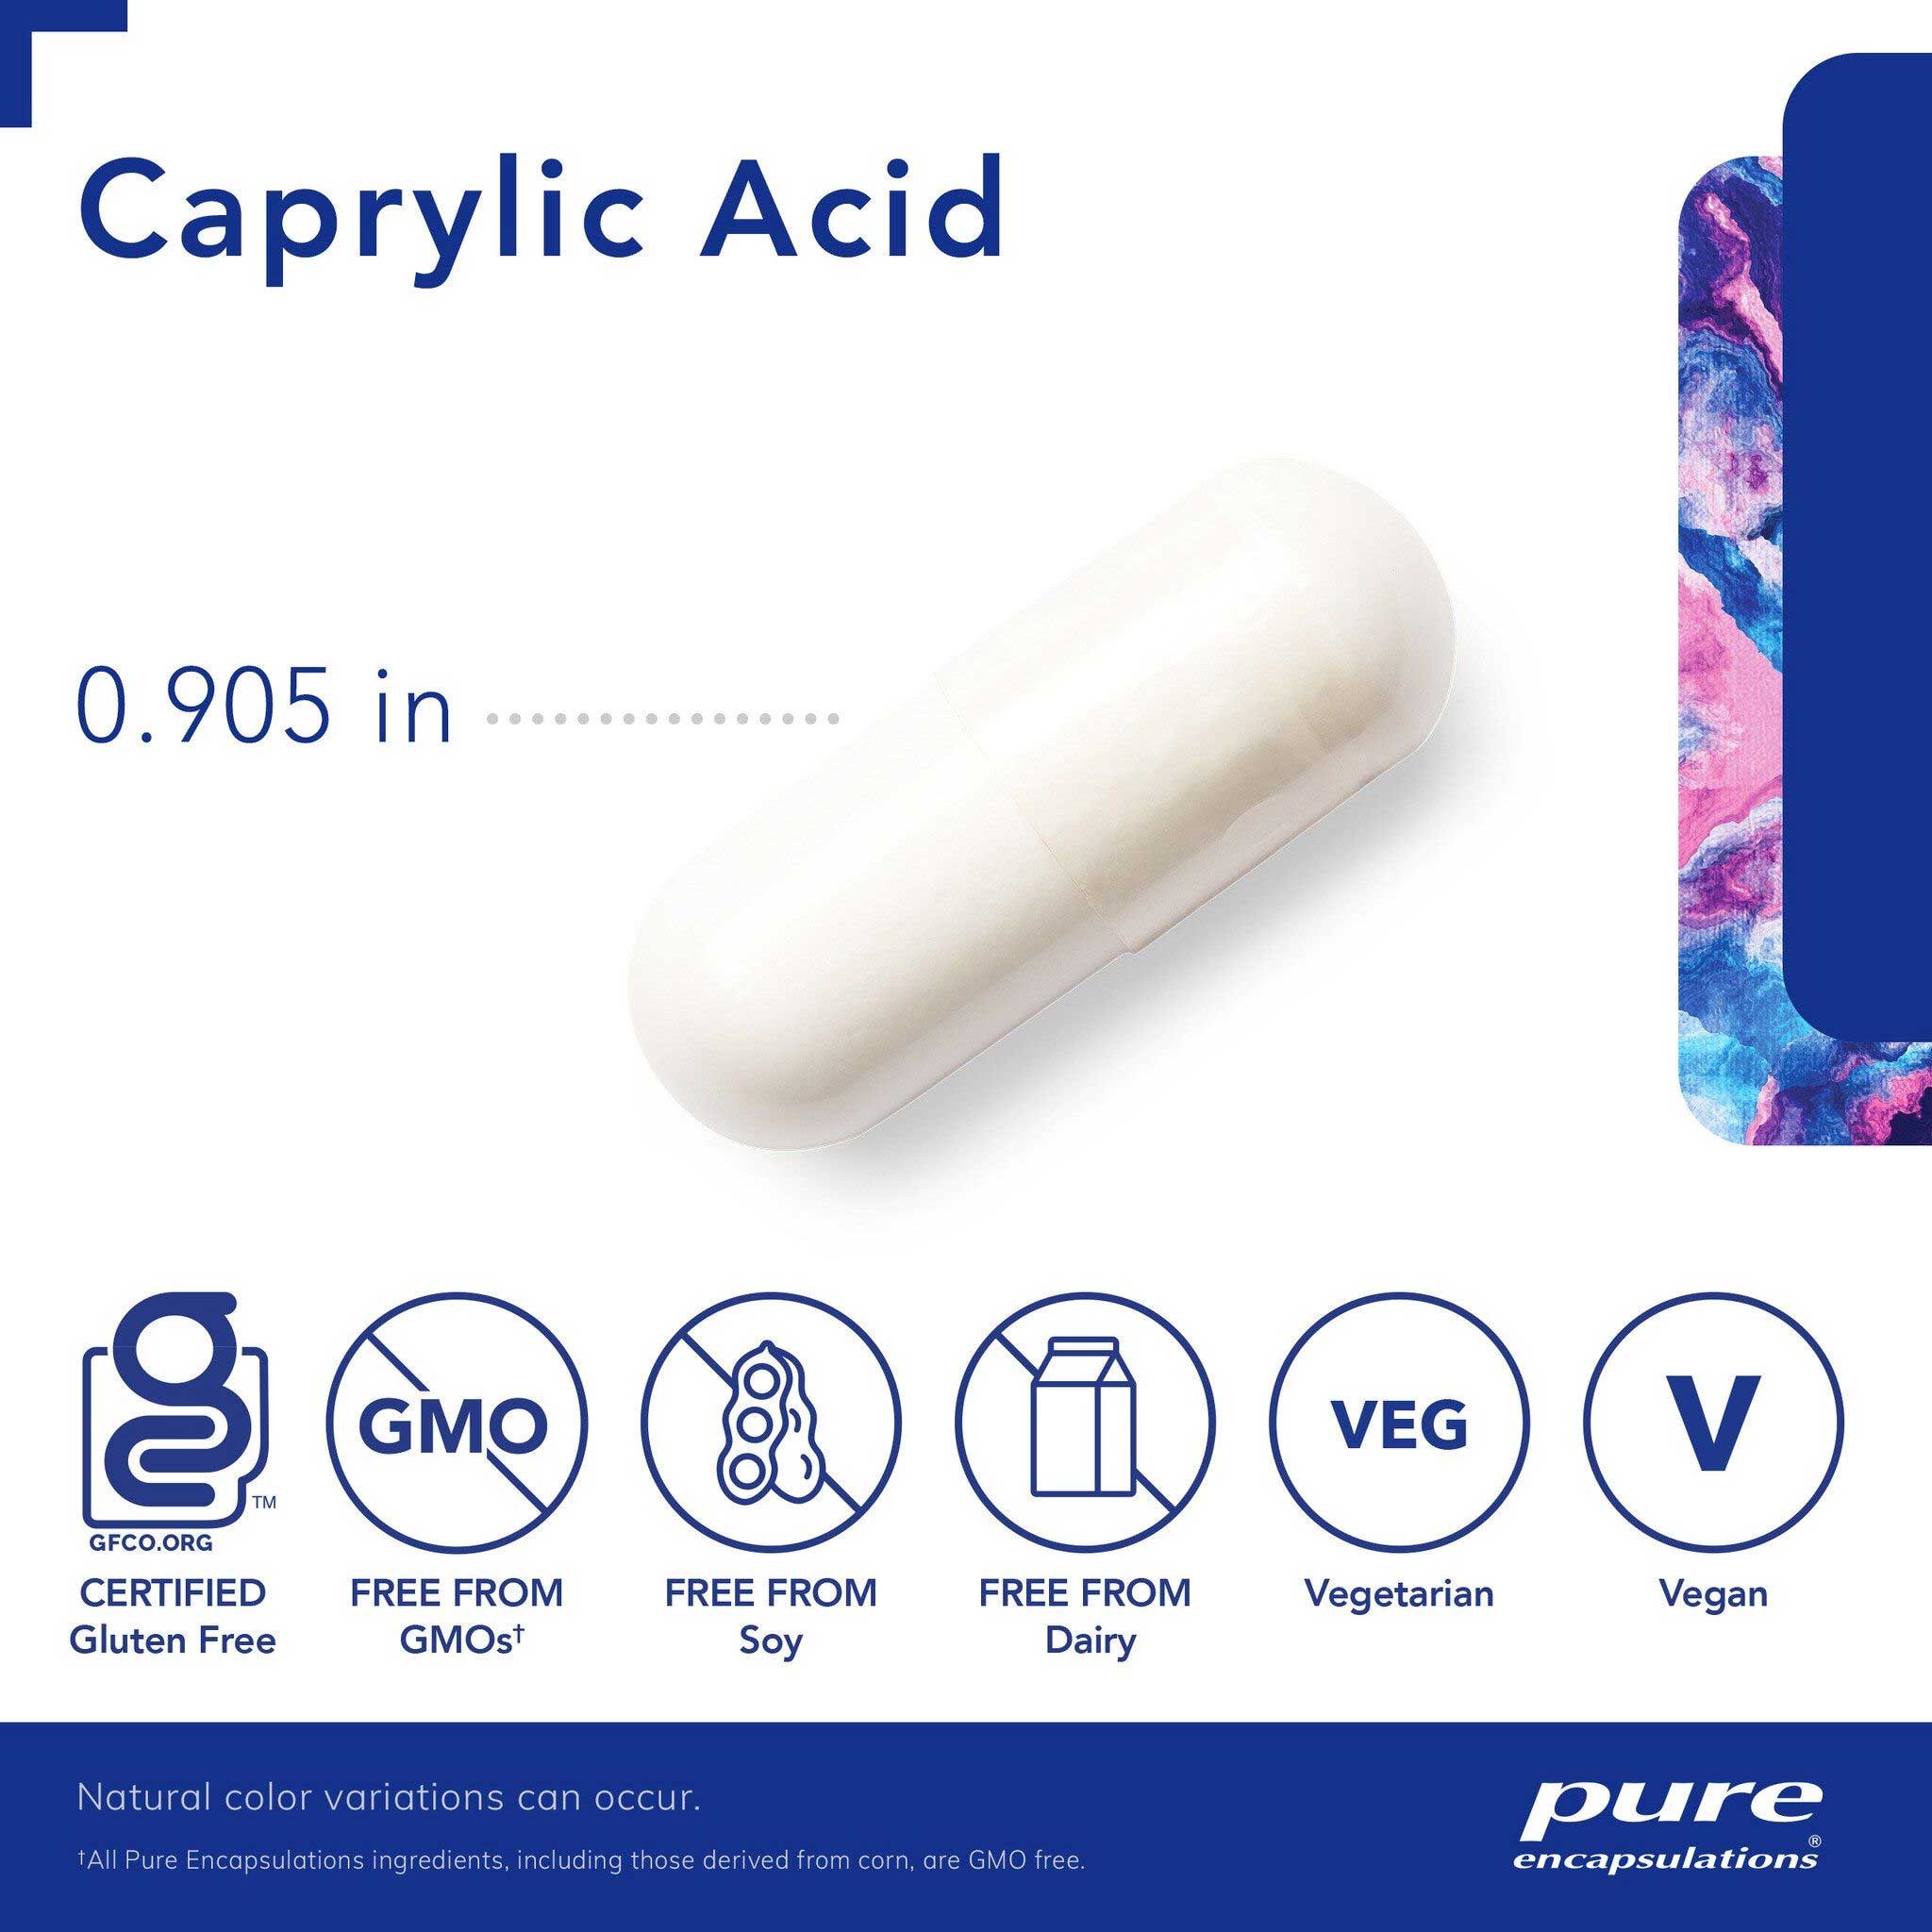 Pure Encapsulations Caprylic Acid Capsules